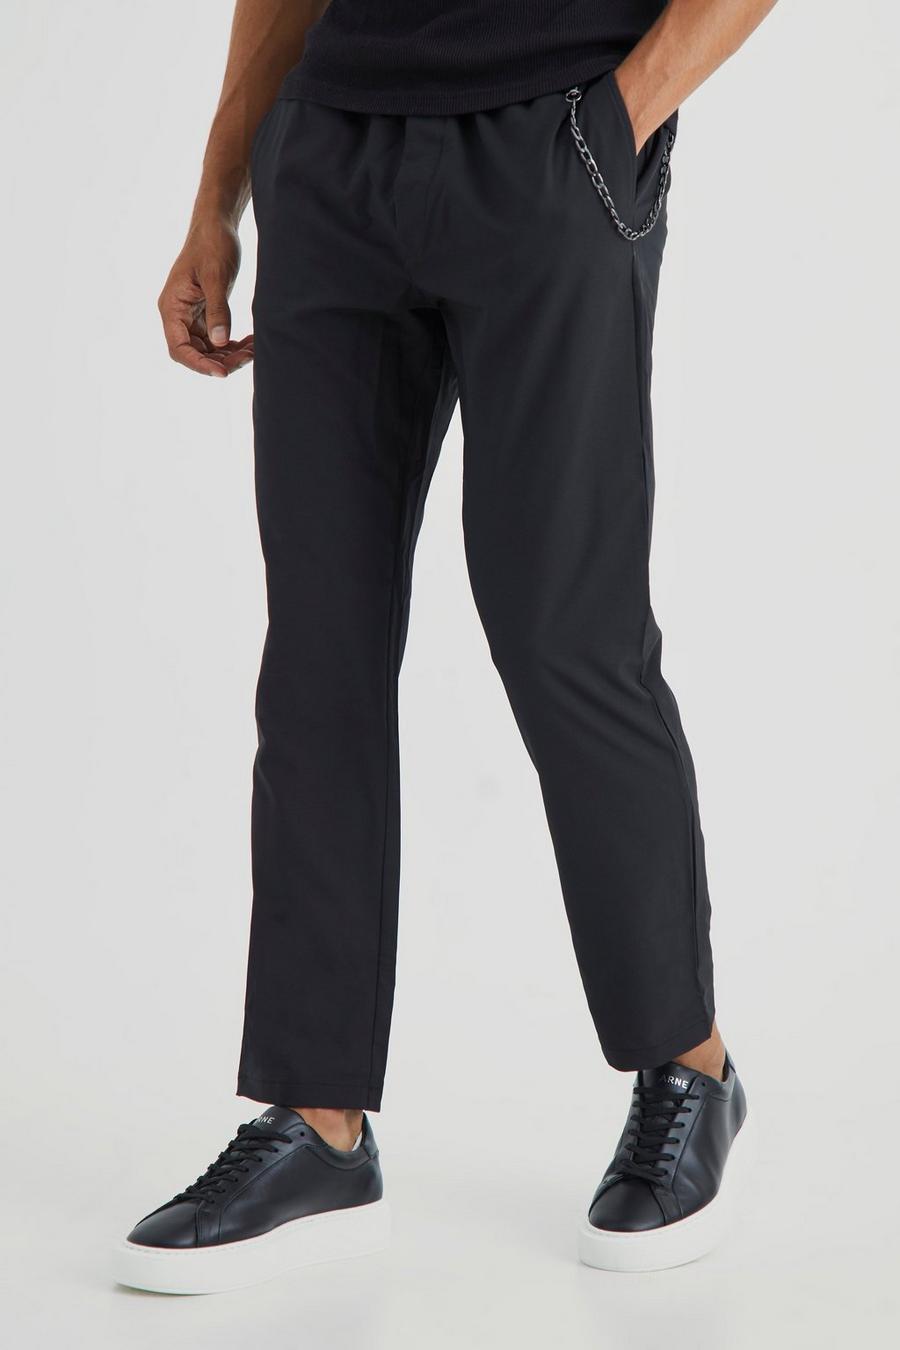 Elastische Slim-Fit Hose mit 4-Way Stretch, Black